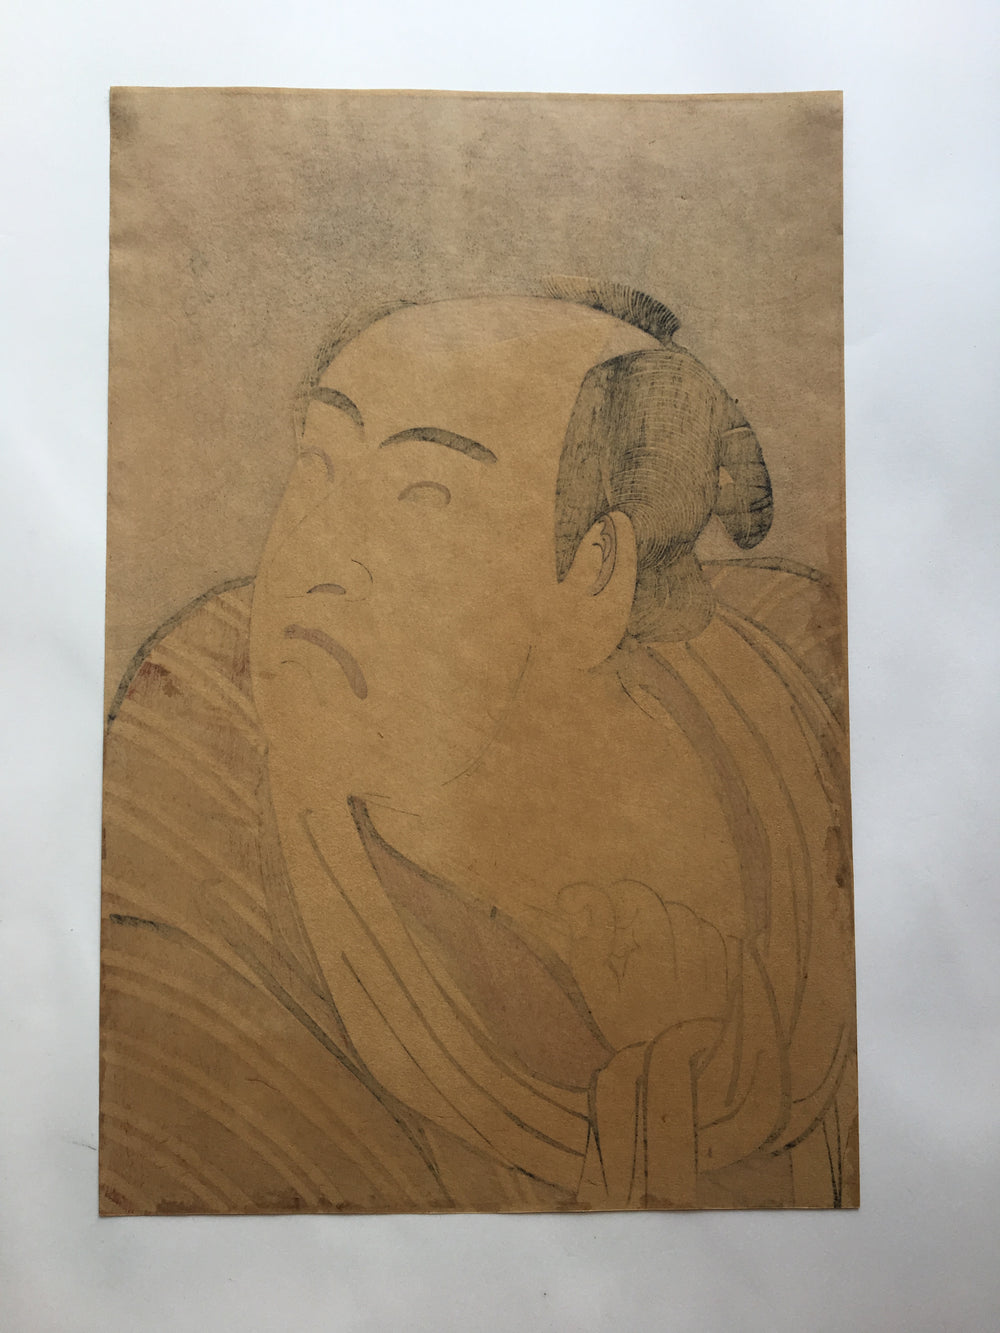 Matsumoto Kōshirō IV as Tsurunosuke by Katsukawa Shunshō (late 18th century)